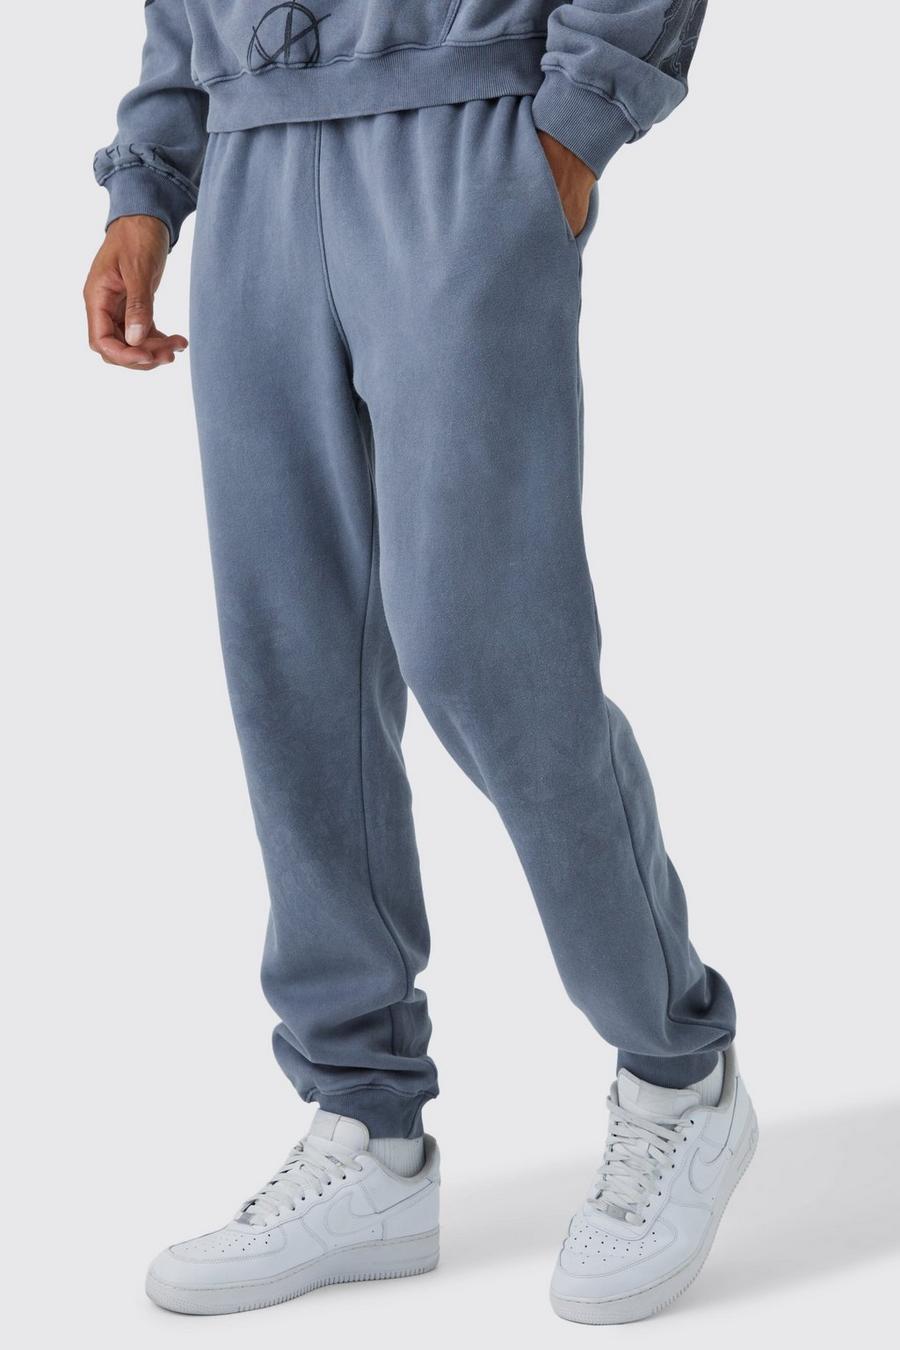 Pantalón deportivo Tall con lavado de ácido, Charcoal gris